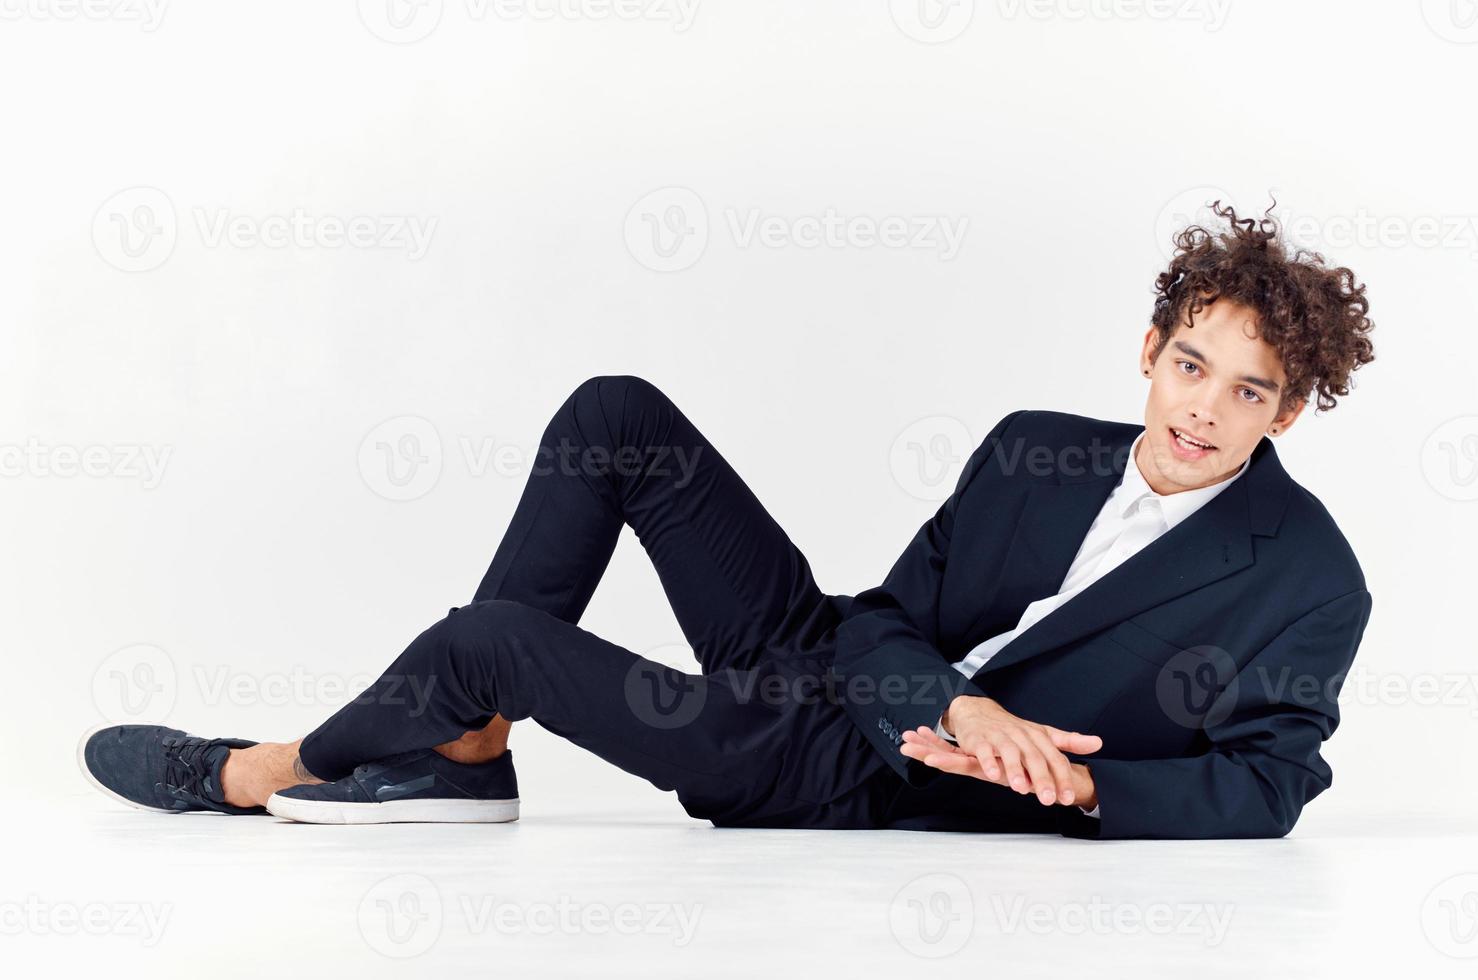 modern kille i en kostym och gymnastikskor Sammanträde på de golv i en ljus rum lockigt hår modell foto